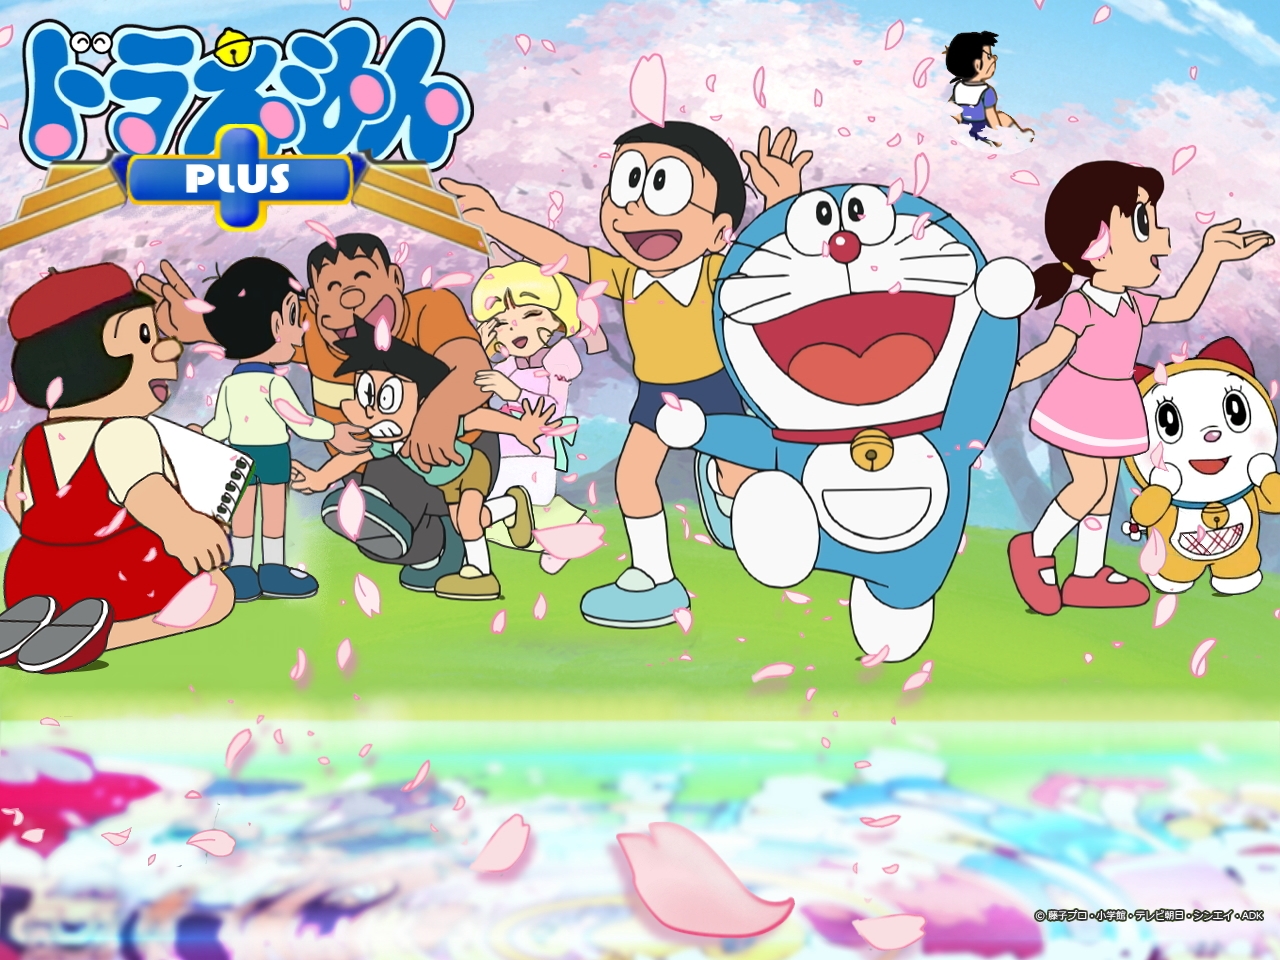 Doraemon nền tảng: Thế giới của chú mèo máy Doraemon luôn ẩn chứa những điều bí ẩn và thú vị. Hãy trang trí nền tảng của bạn với những hình ảnh Doraemon đầy màu sắc để tạo cảm giác tươi vui và hạnh phúc cho mỗi ngày.